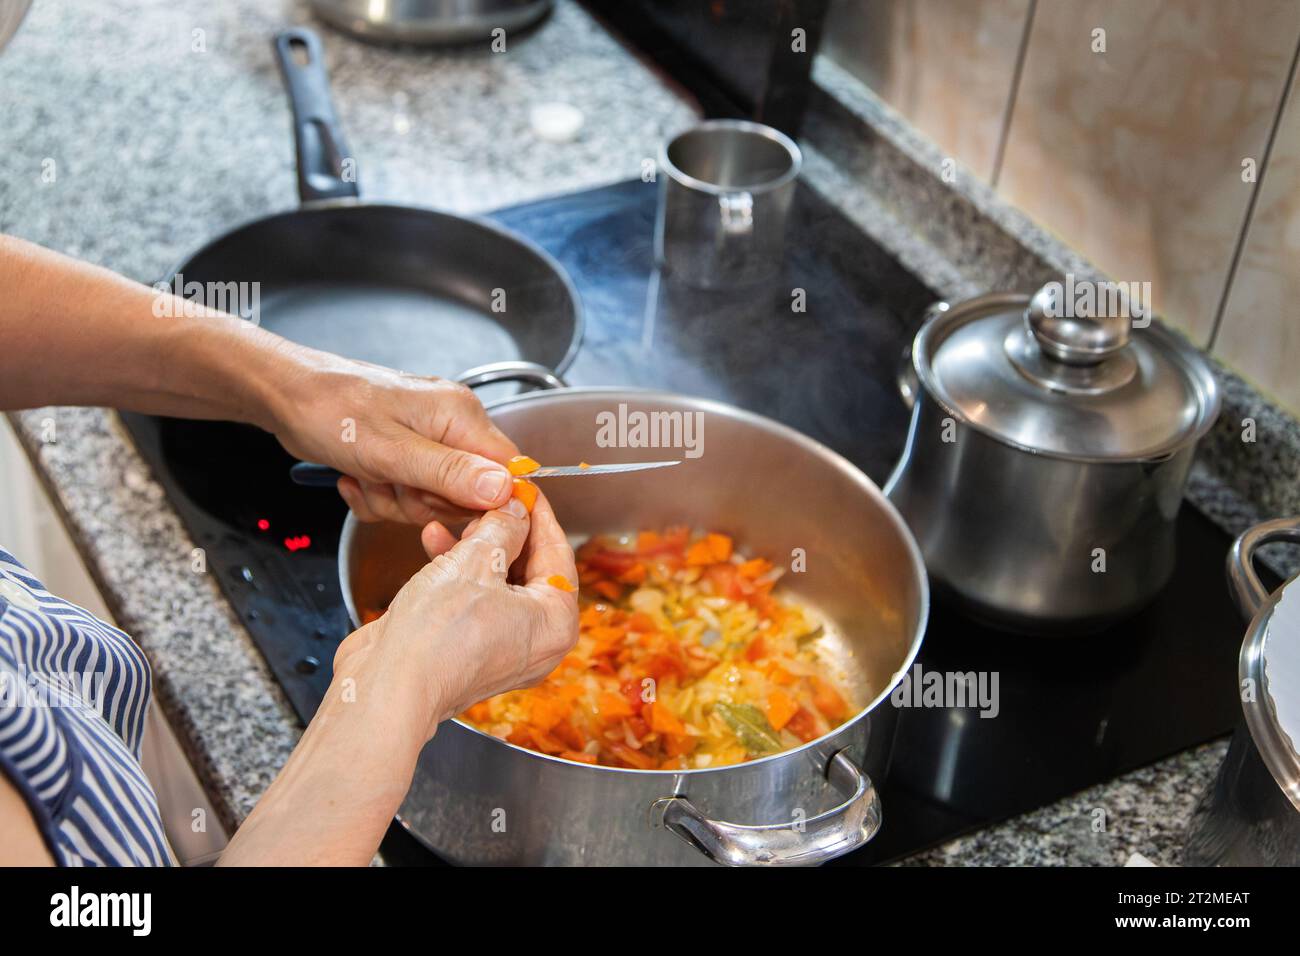 Détail d'une personne cuisinant des aliments sur la table de cuisson électrique avec des casseroles et coupant les aliments pour faire le ragoût. Concept ménage, cuisine à la maison. Banque D'Images